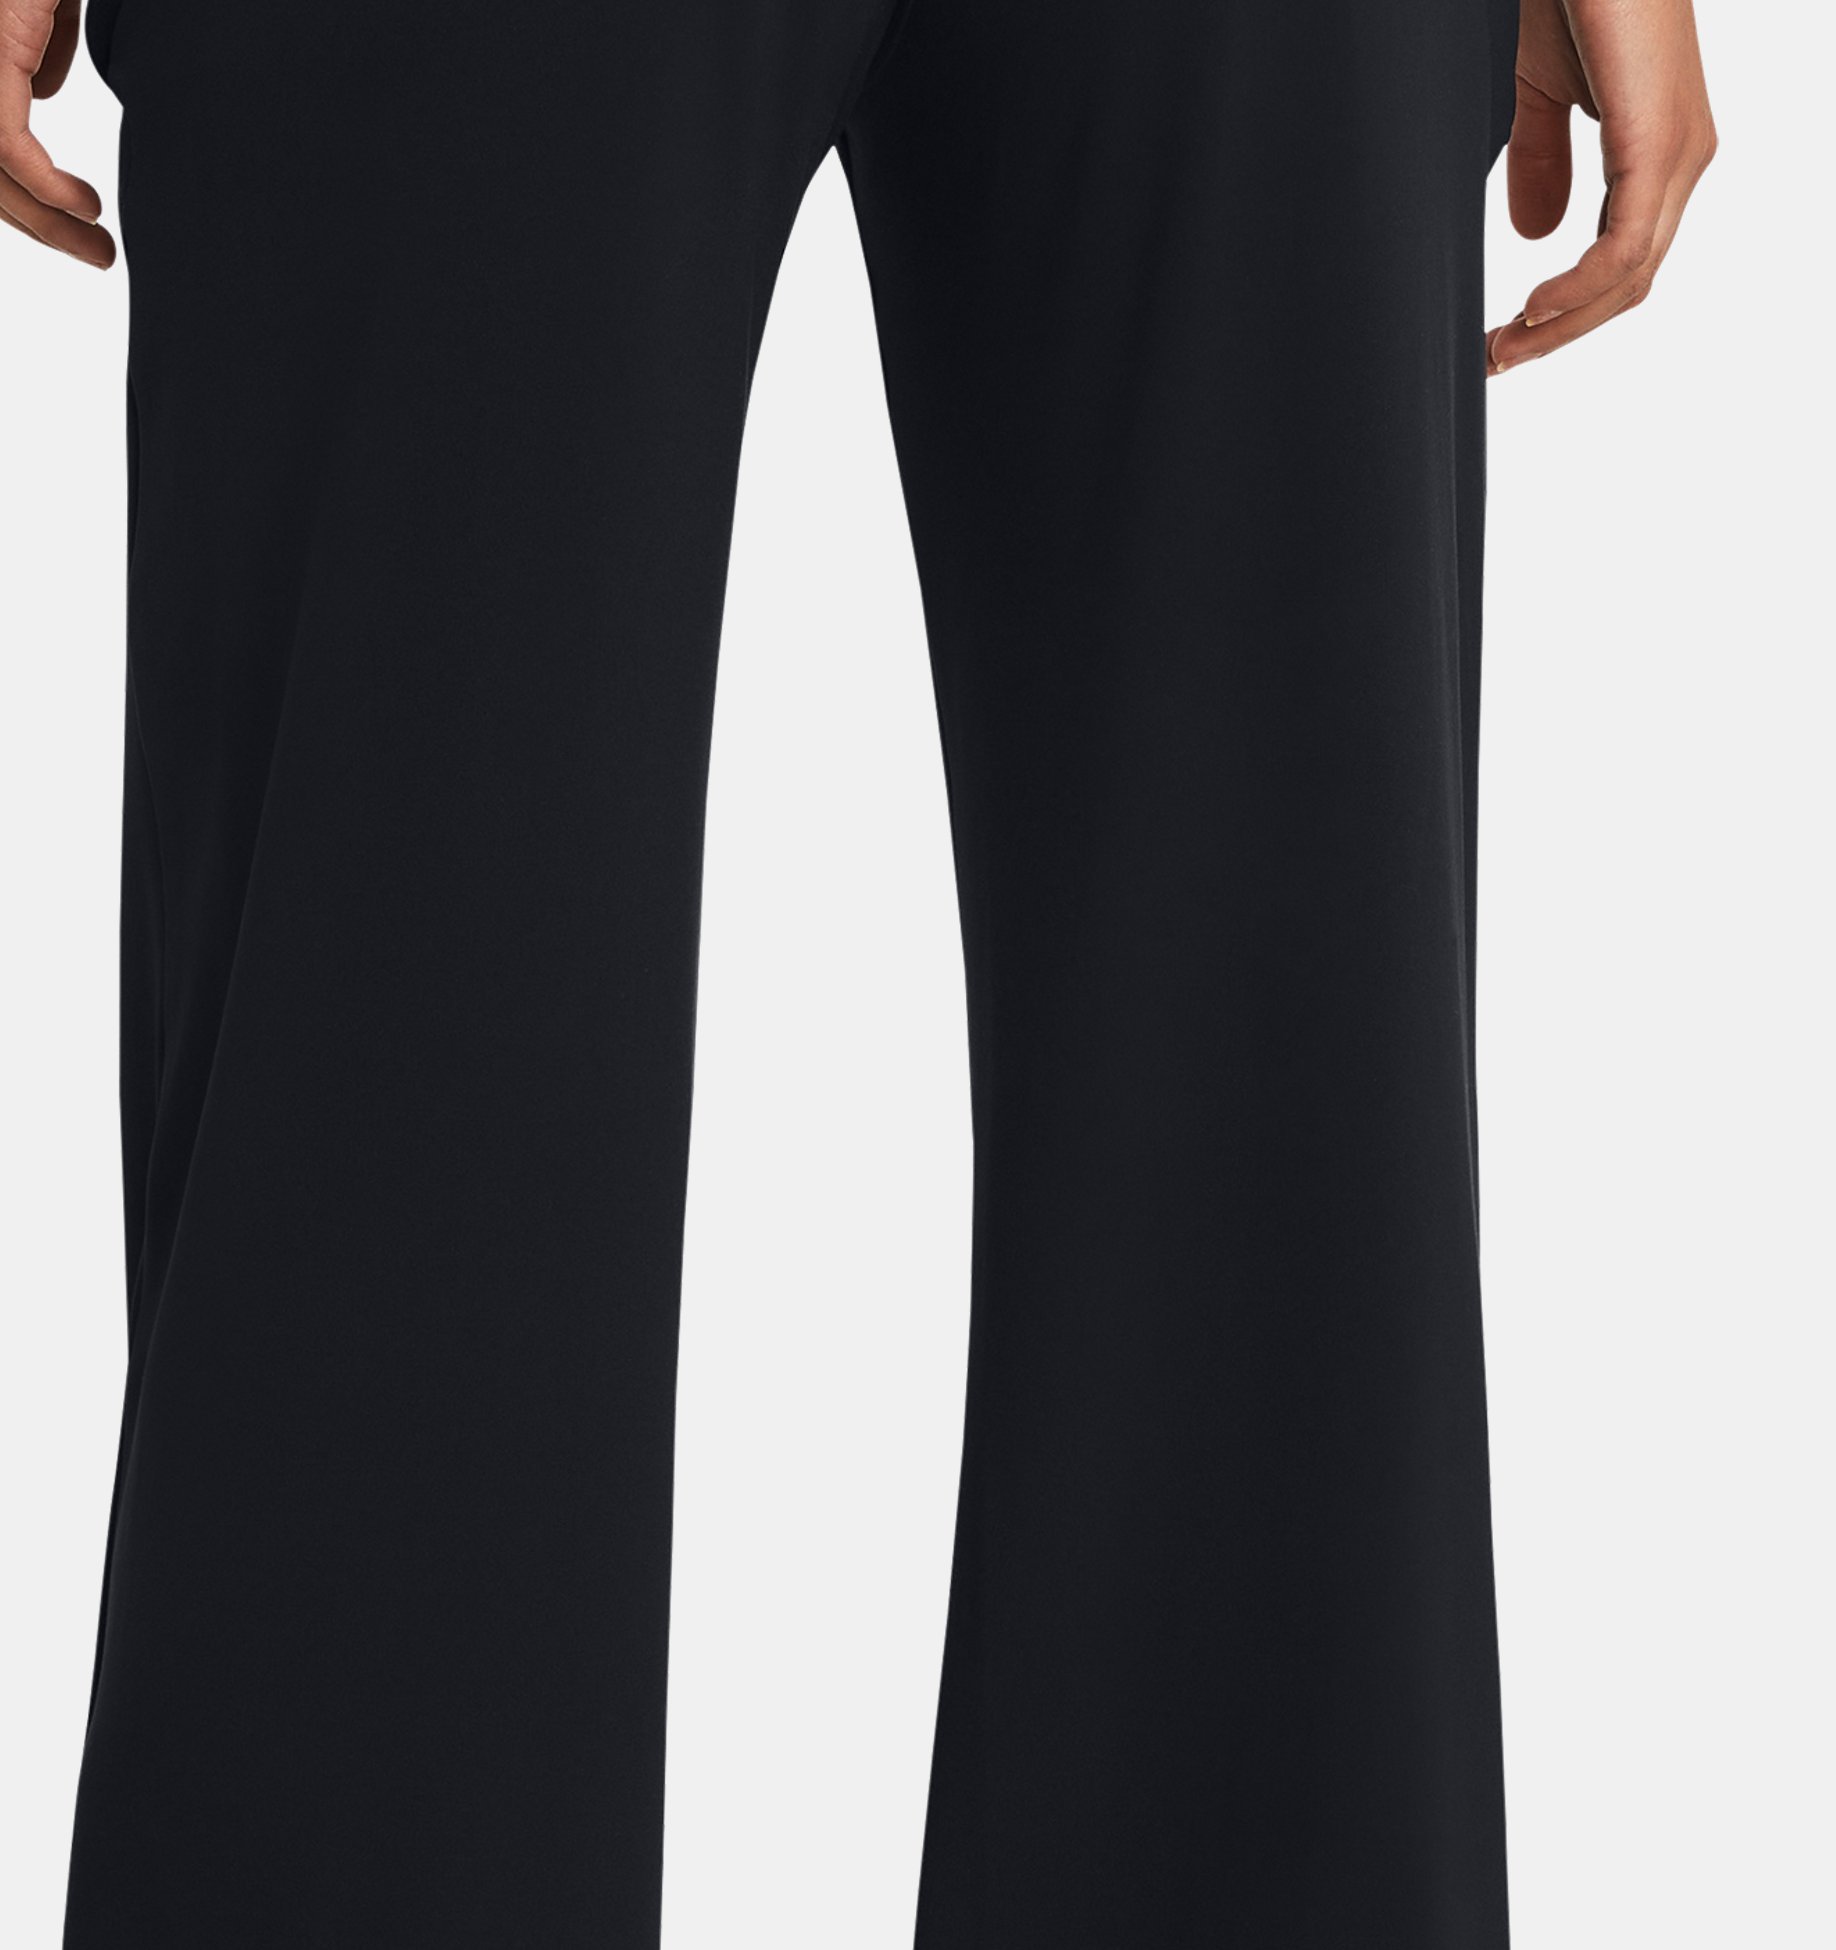 Under Armour Women's Move Core Pants Size 2XL # 1317823 100 $80